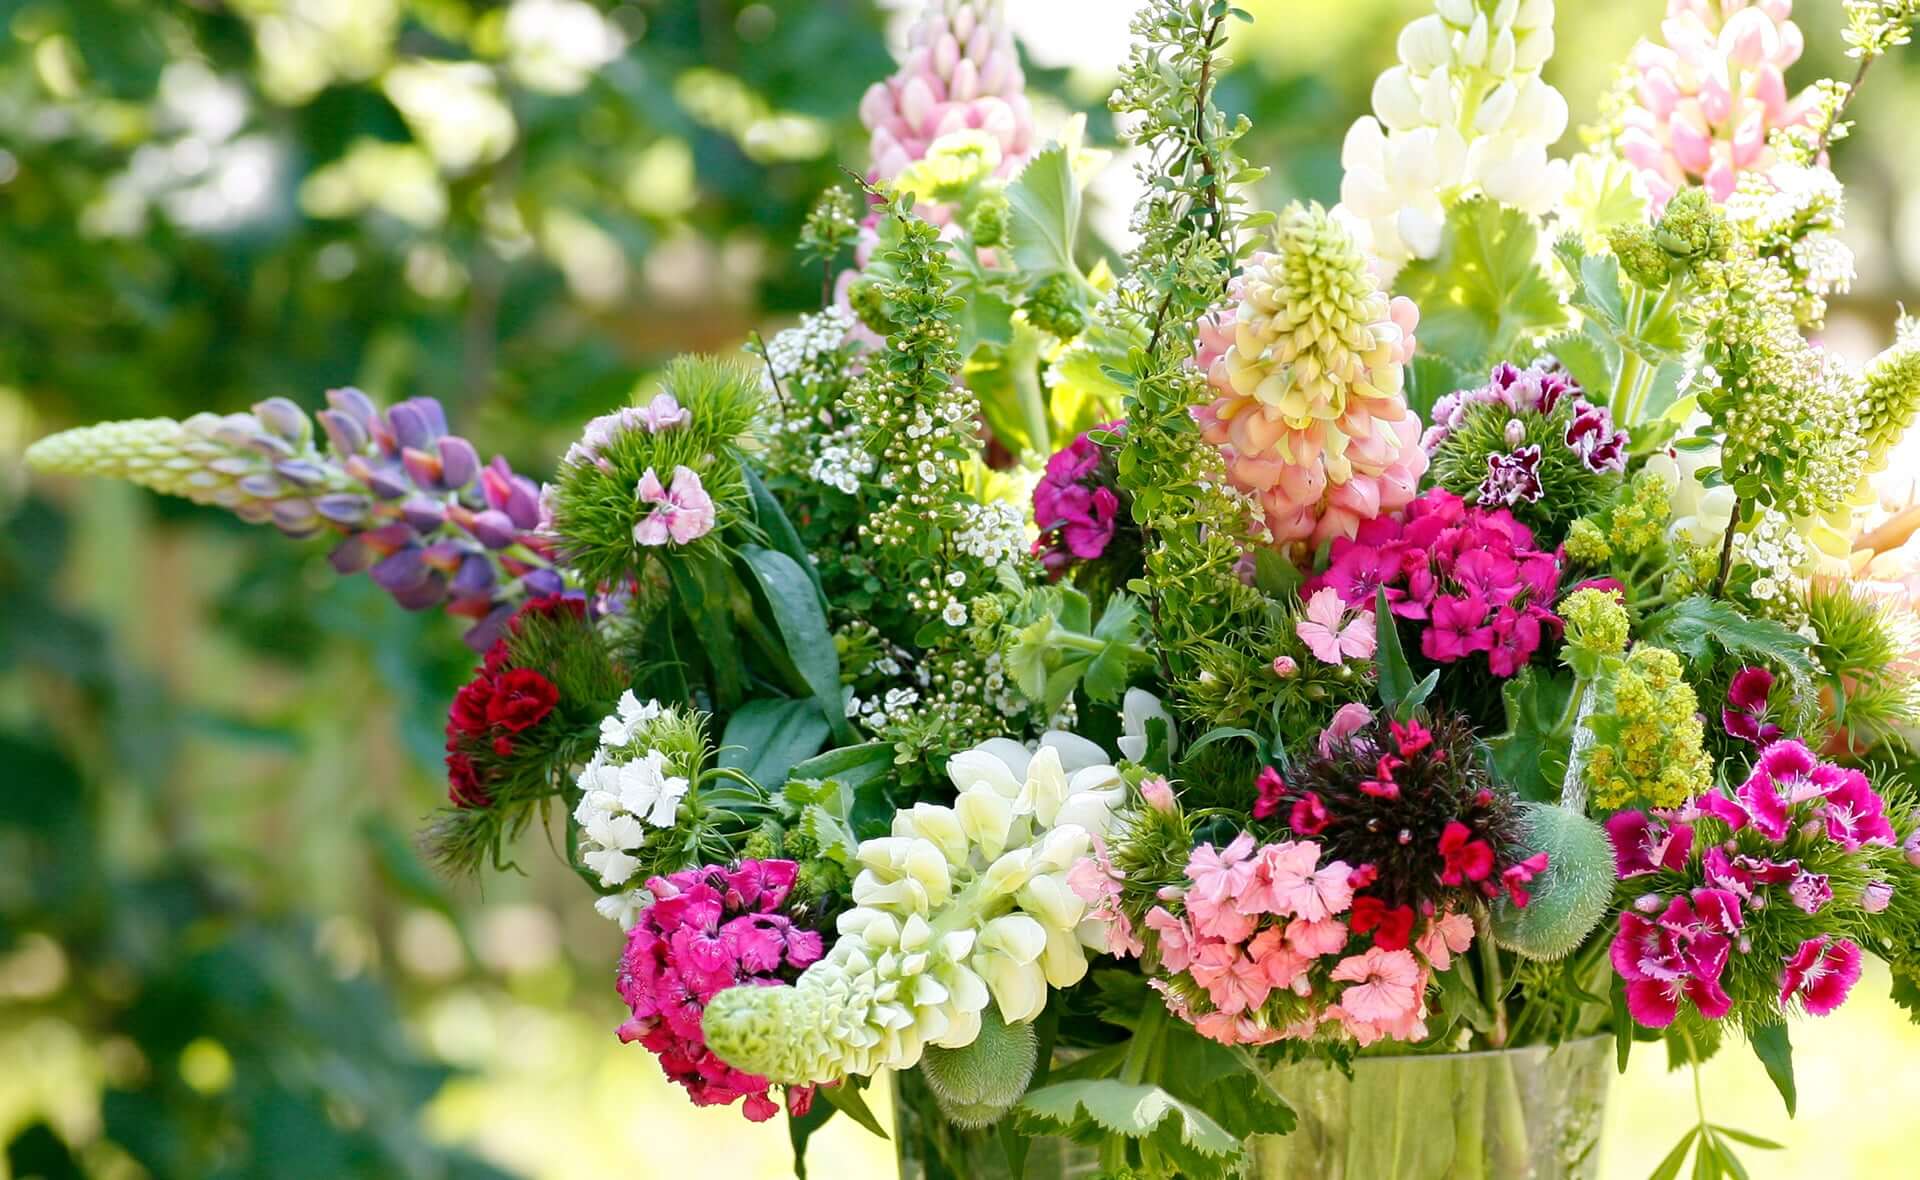 In unserem Schnittblumen Großhandel finden Sie regionale Schnittblumen und fair trade Rosen in sehr schöner Auswahl.